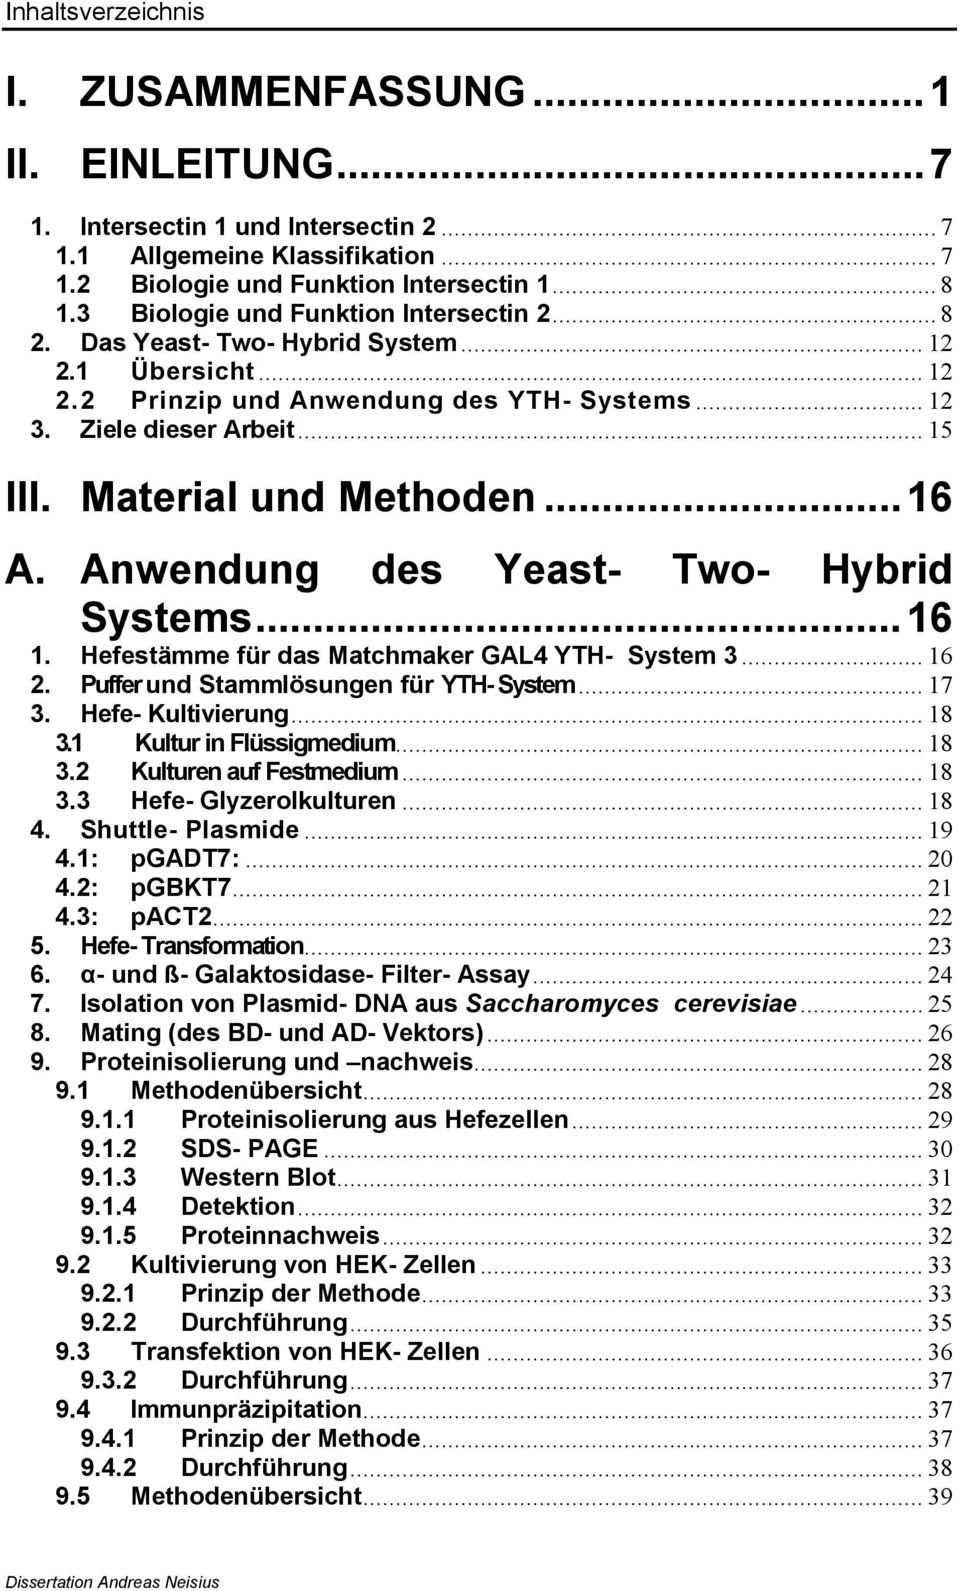 Material und Methoden...16 A. Anwendung des Yeast- Two- Hybrid Systems...16 1. Hefestämme für das Matchmaker GAL4 YTH- System 3... 16 2. Puffer und Stammlösungen für YTH- System... 17 3.